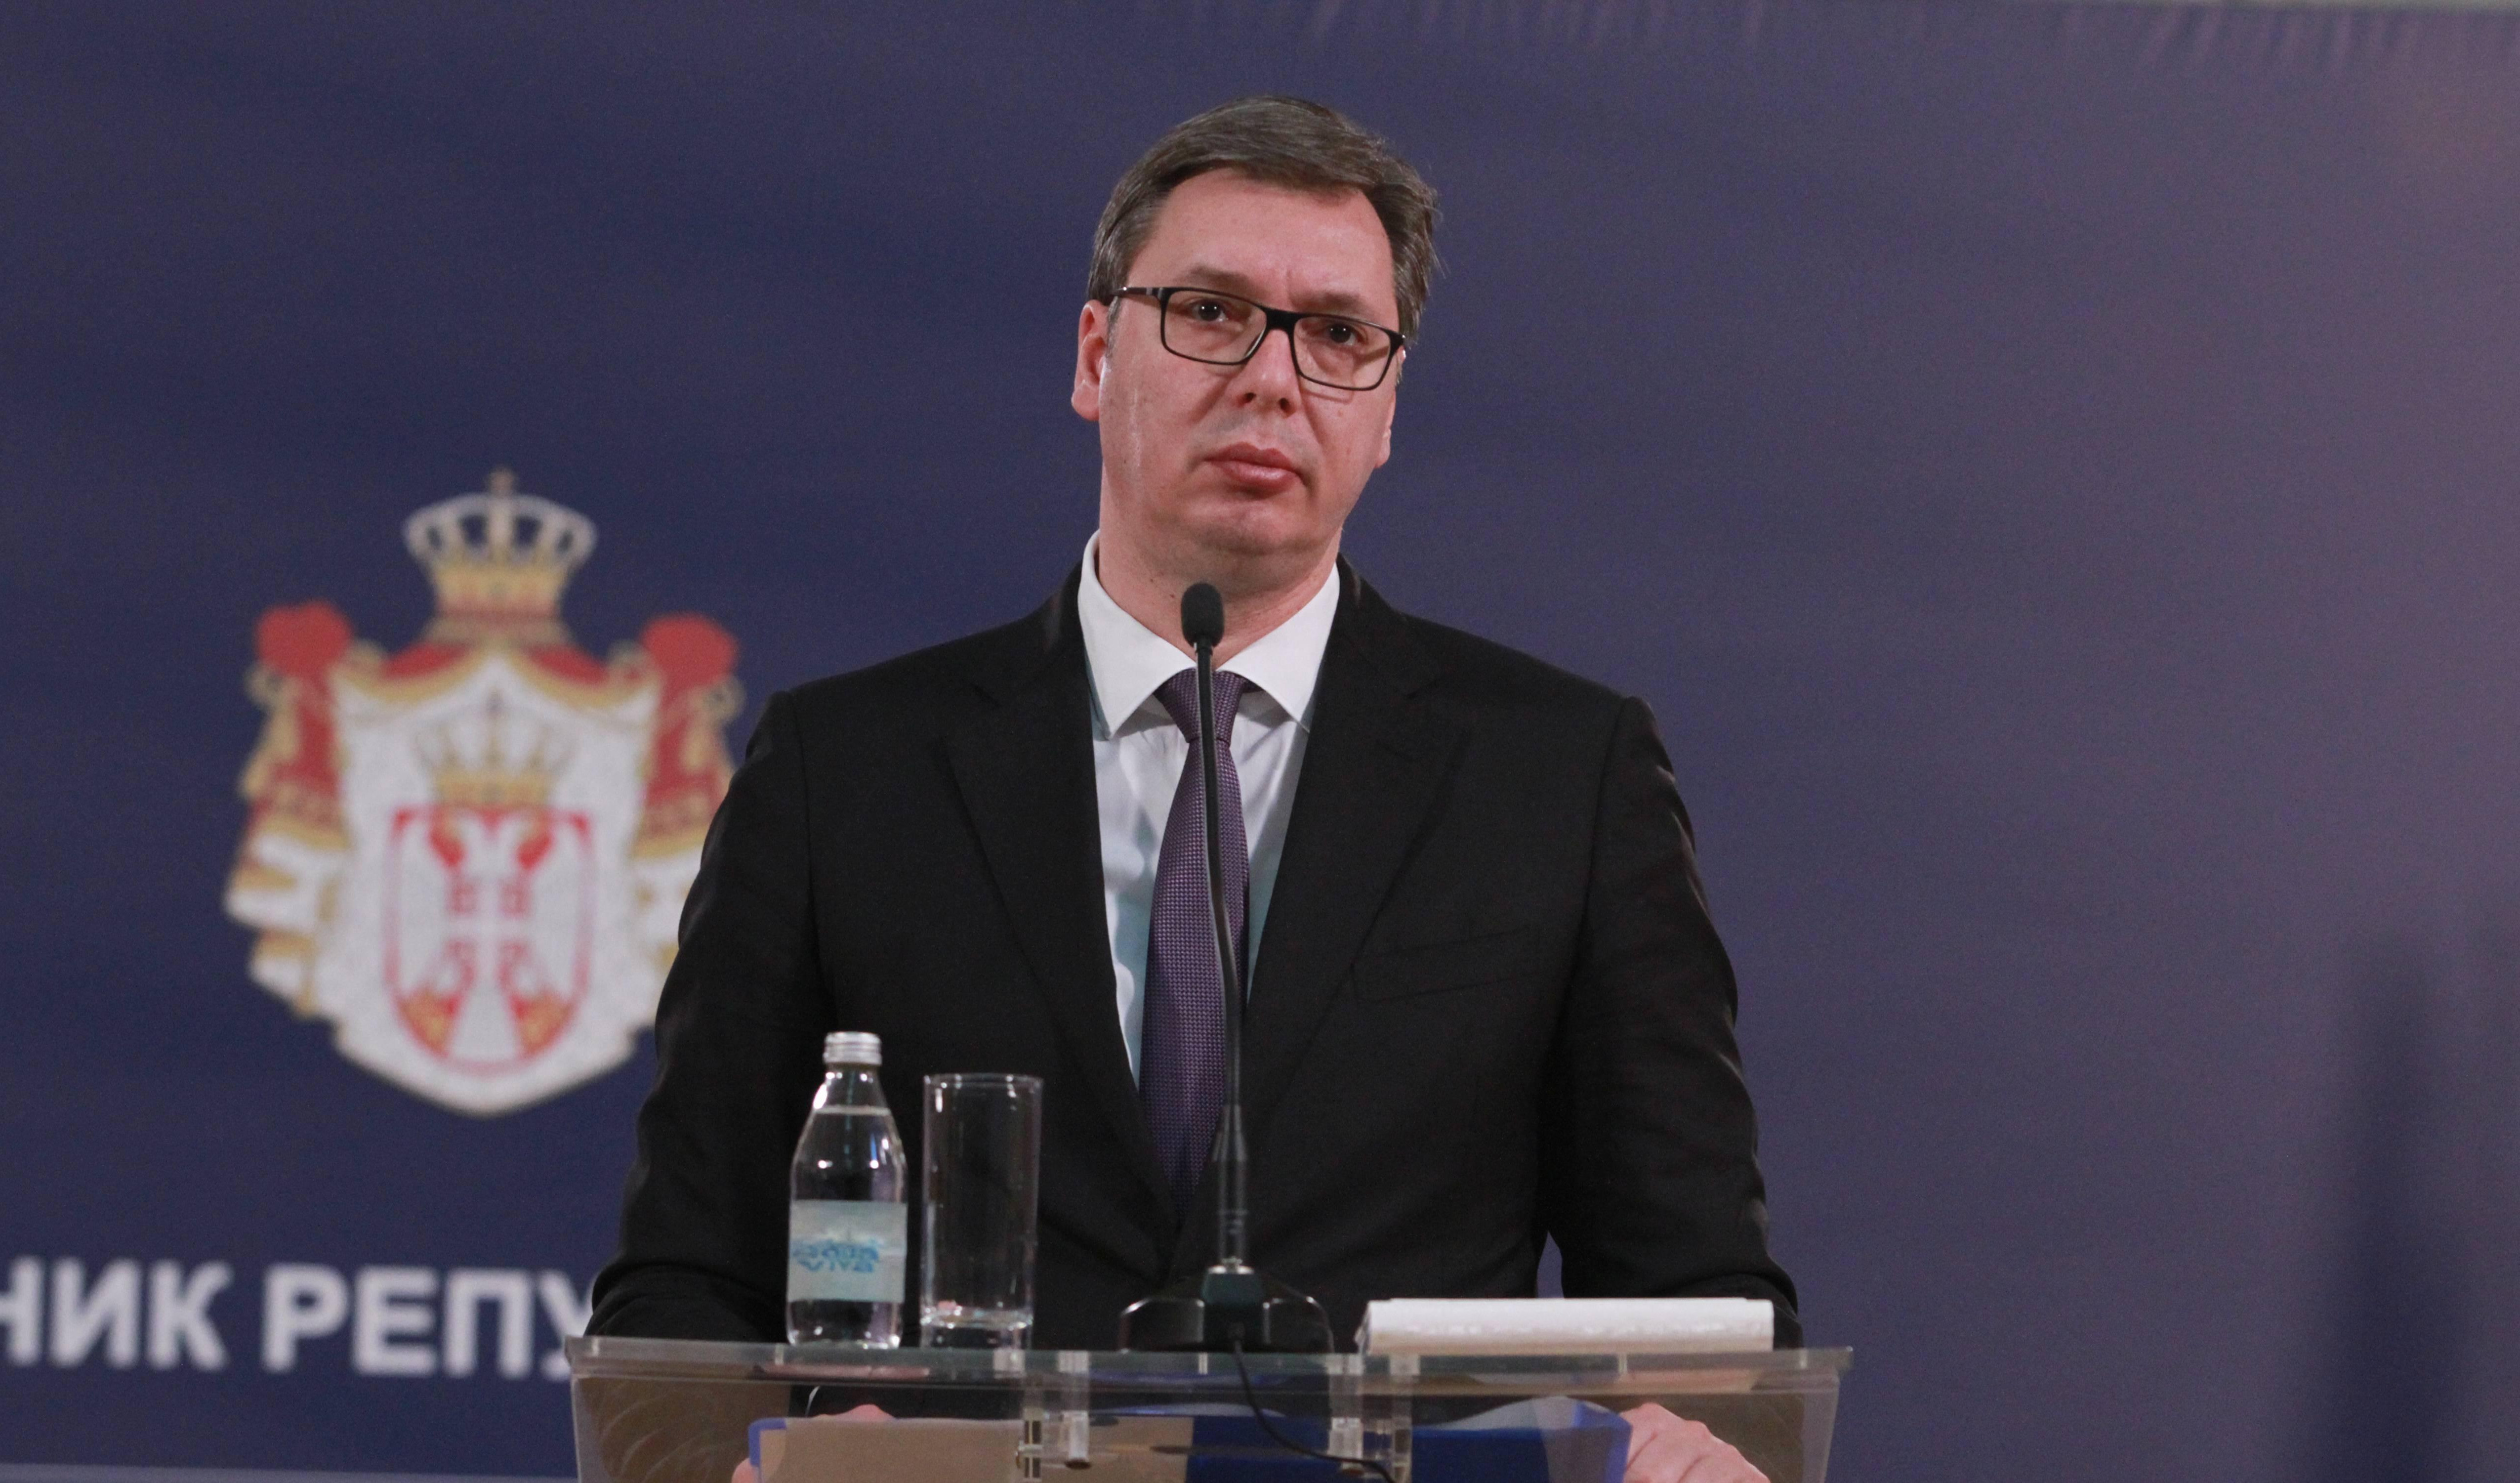 ČESTITKE ZA HRABROST! Vučić pohvalio hrvatskog novinara koji je osudio pozdrav "Za dom spremni"!